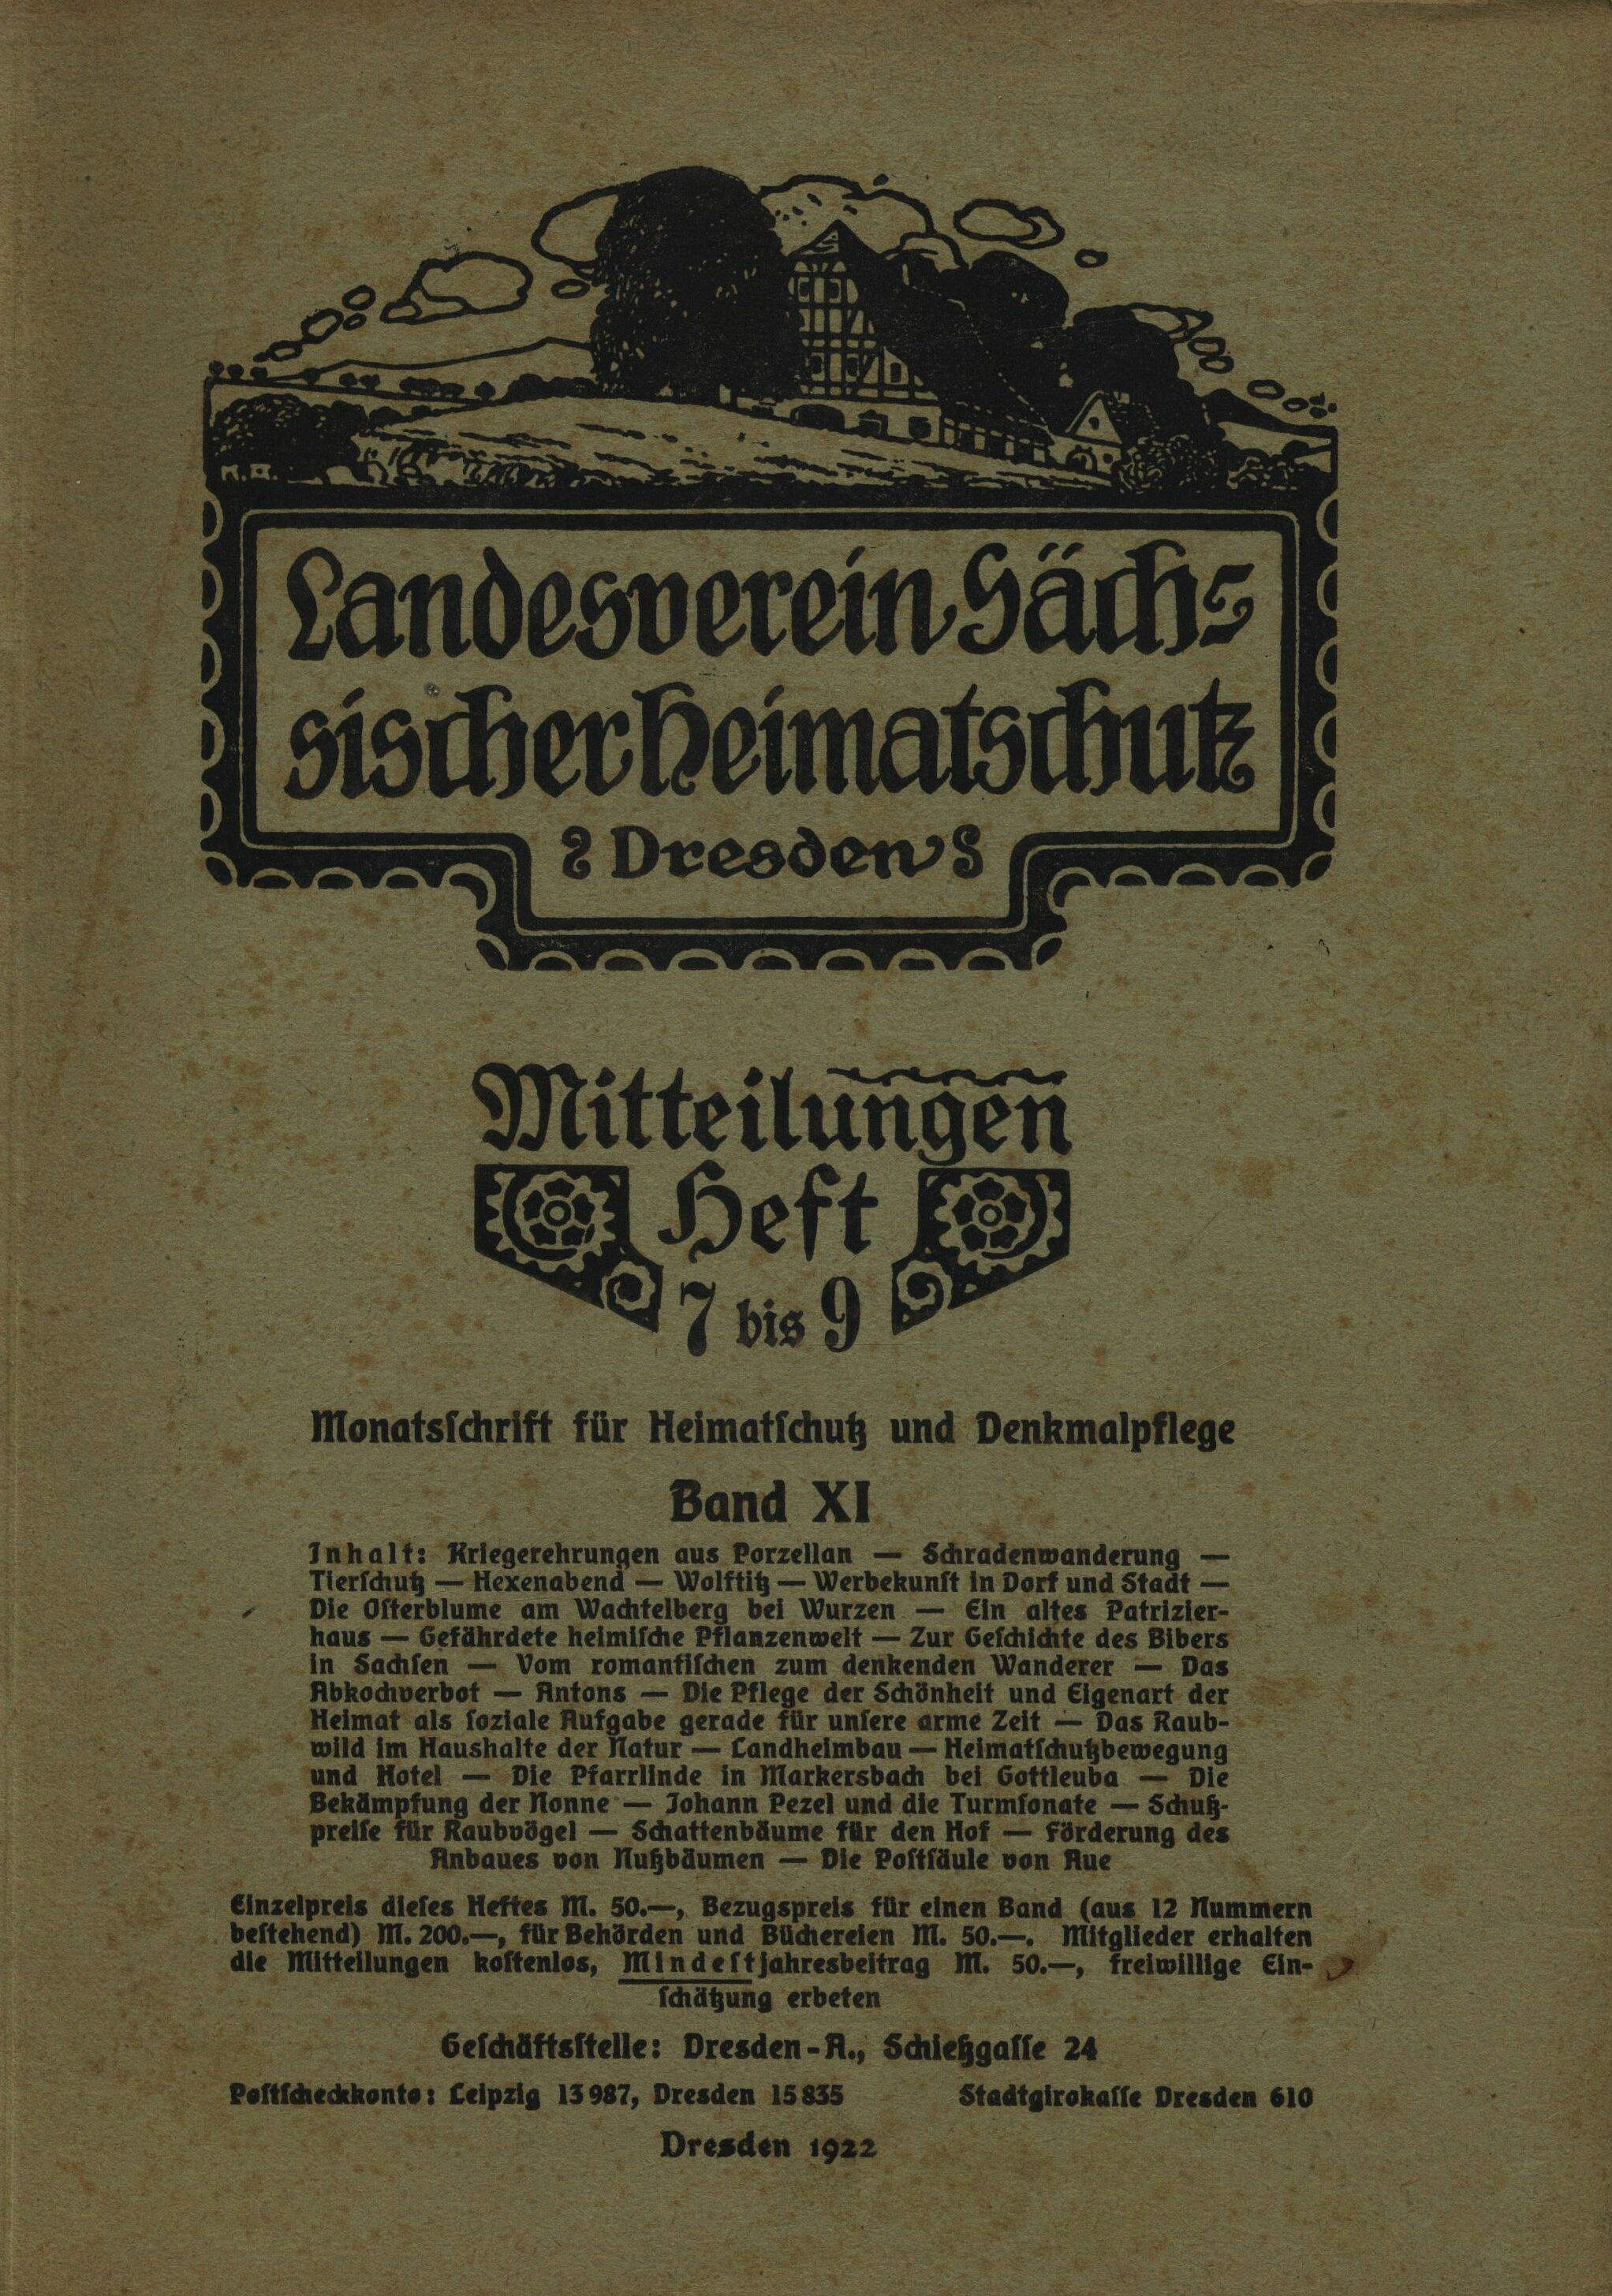 Landesverein Sächsischer Heimatschutz — Mitteilungen Band XI, Heft 7-9